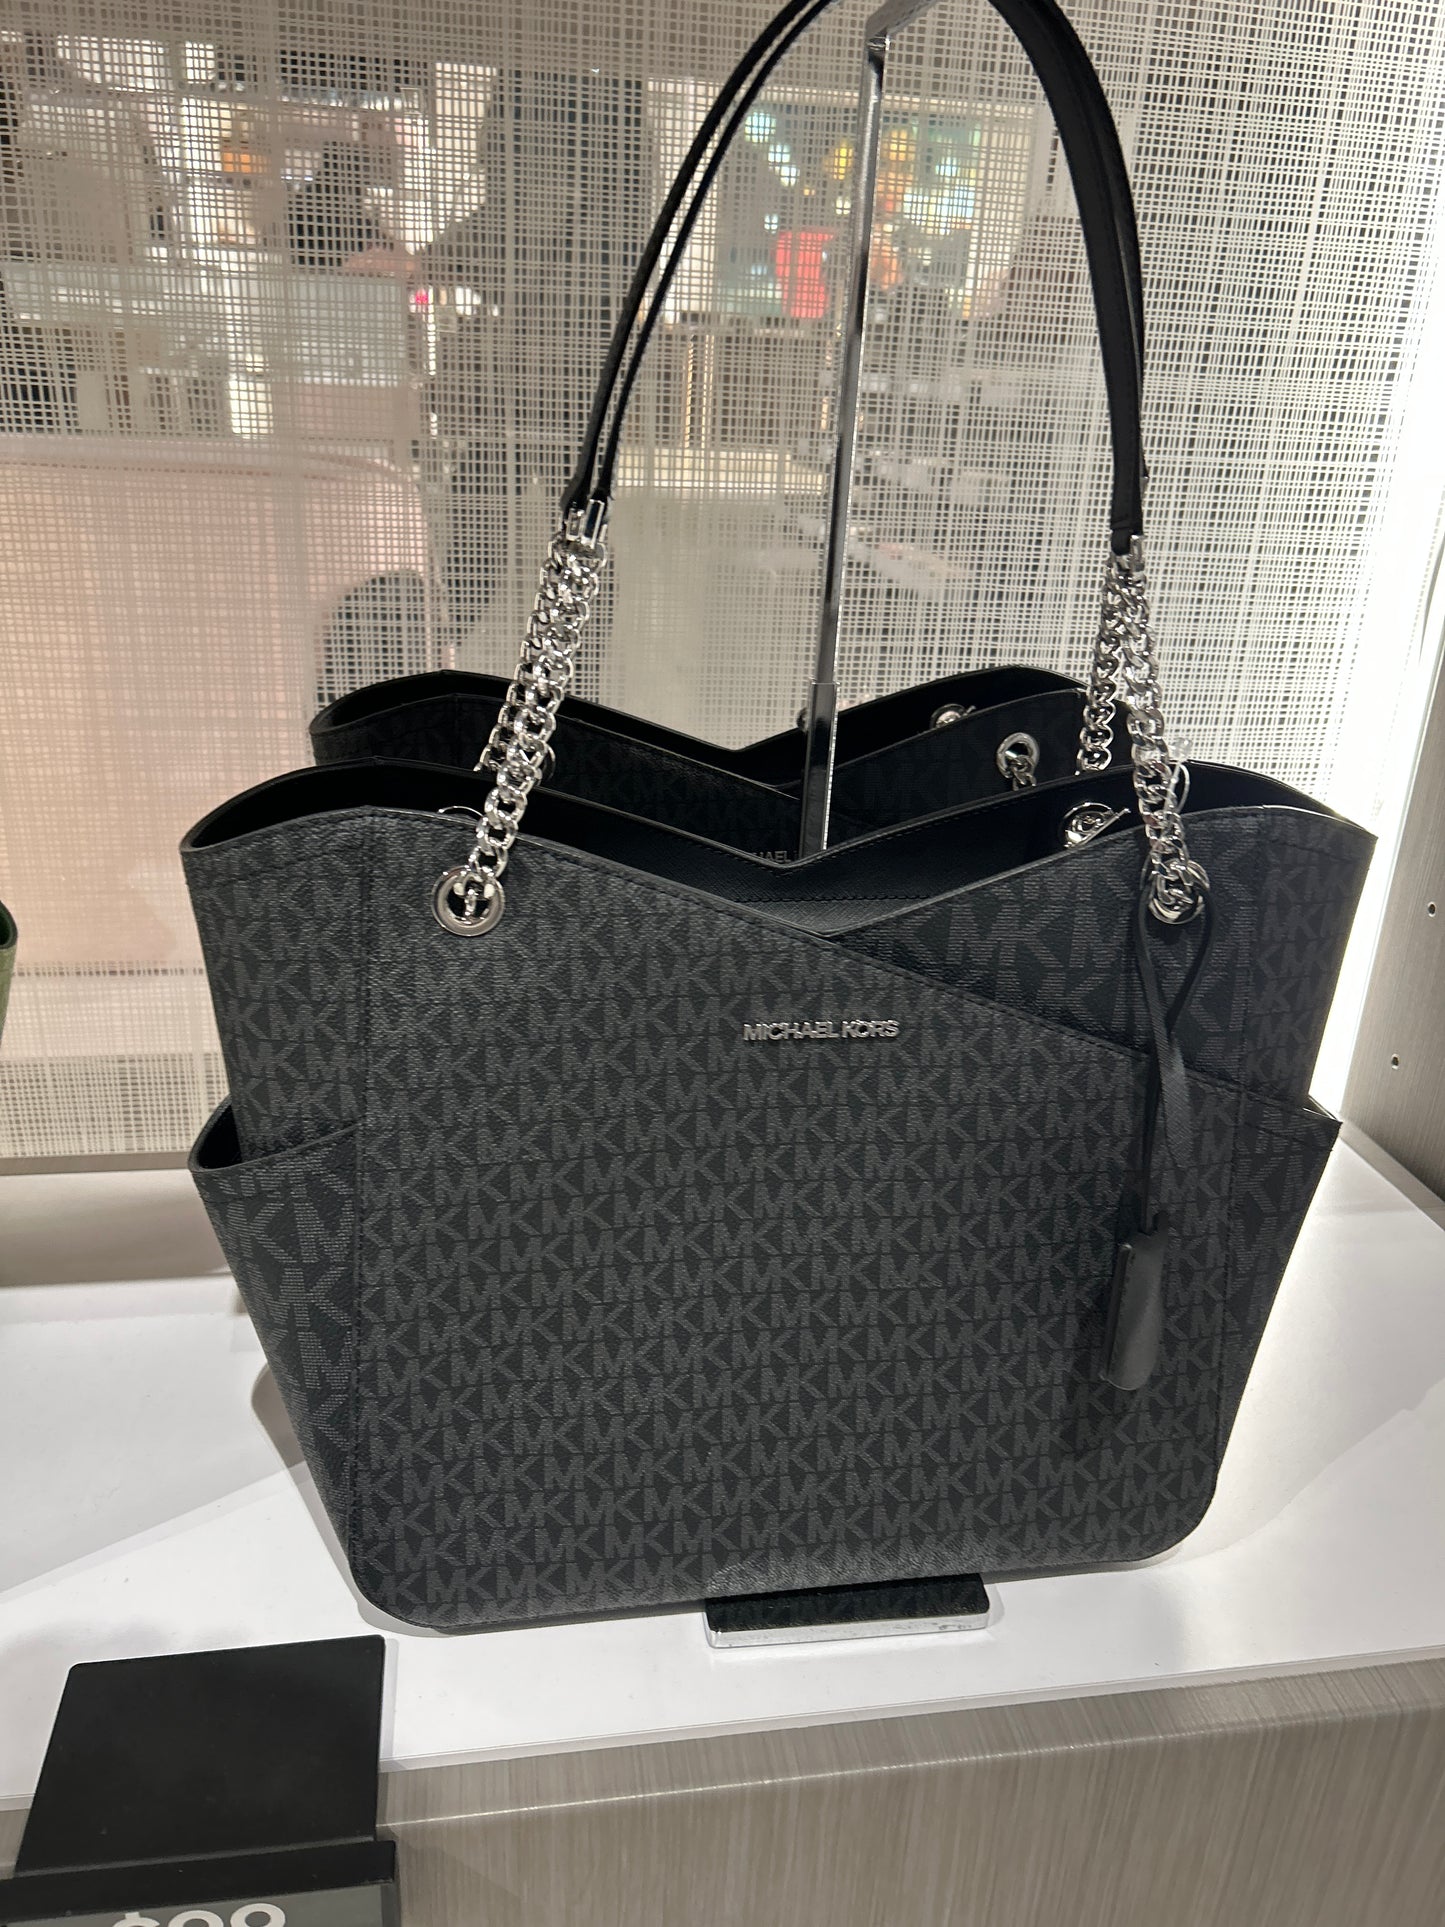 Michael Kors 🦋 | Bags, Girly bags, Luxury bags